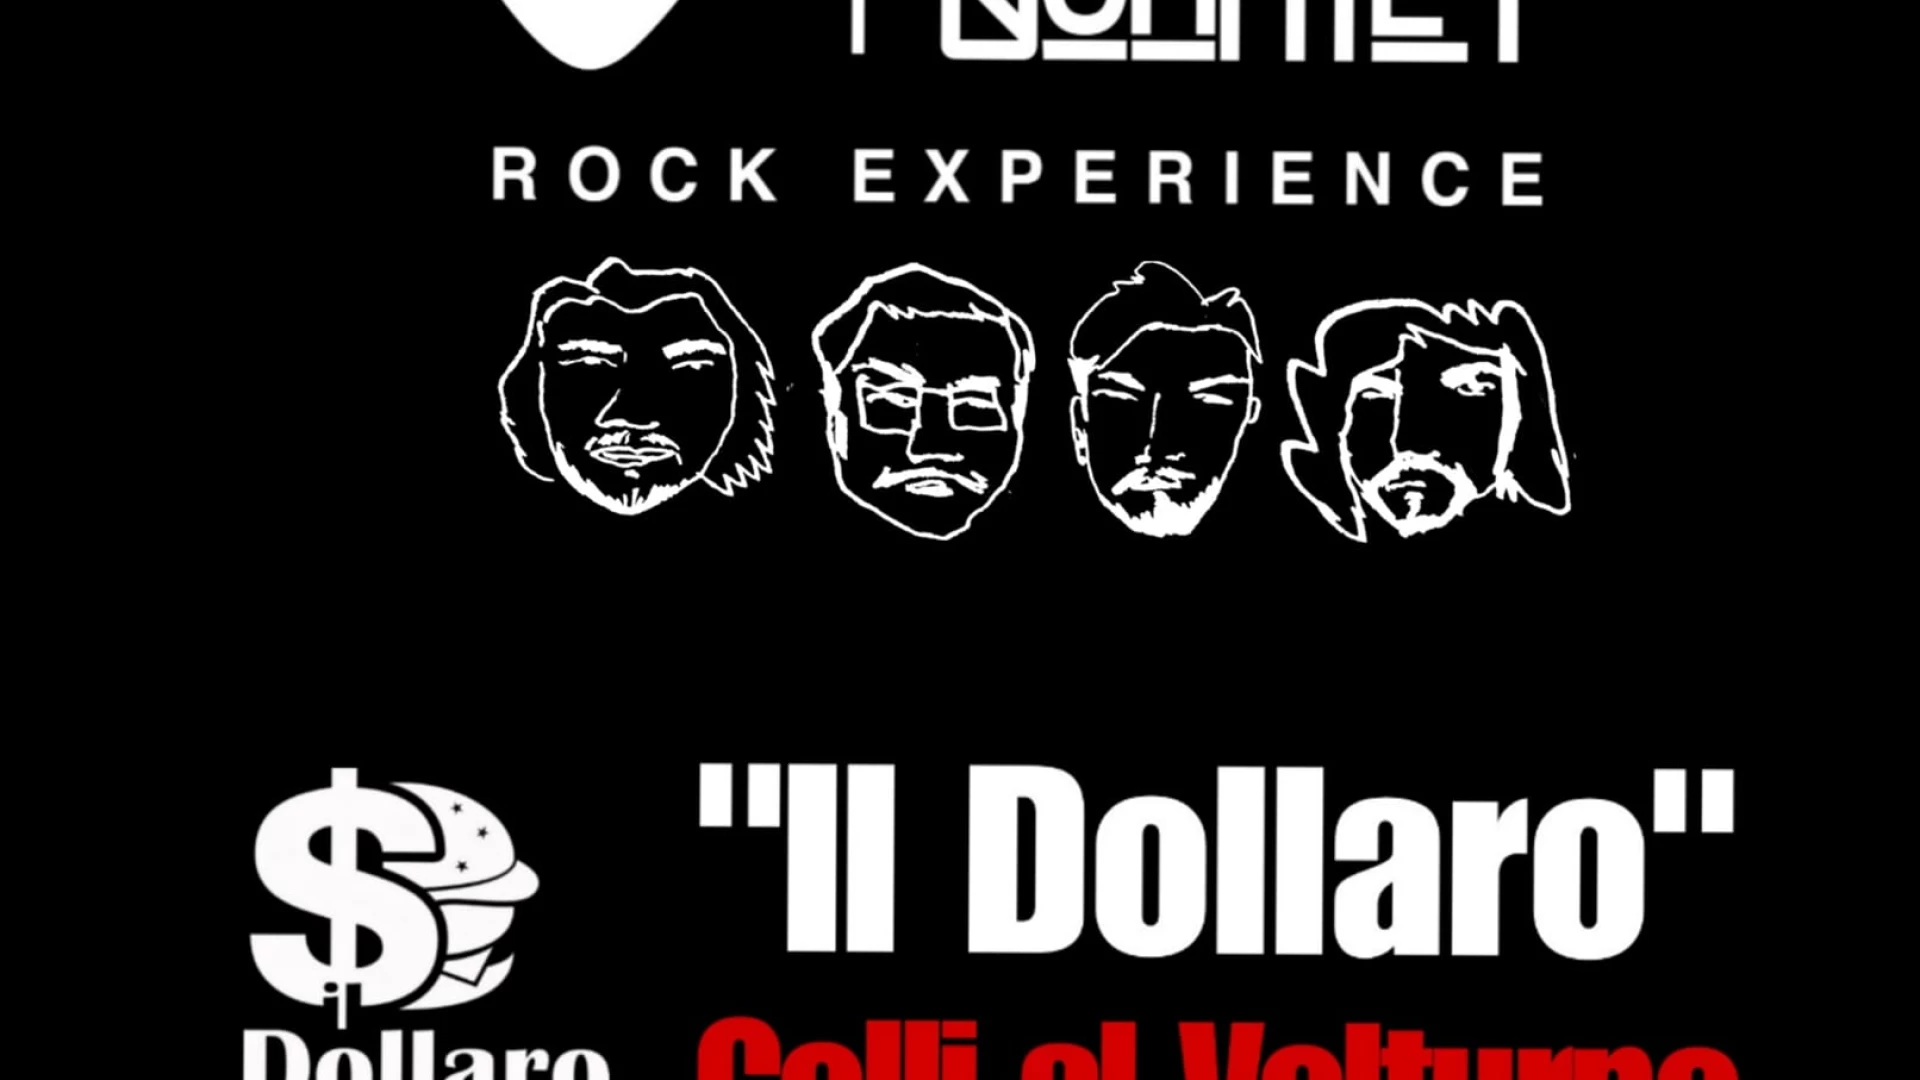 Colli a Volturno: rock di fine estate al Dollaro PublicHouse. Sabato 9 settembre appuntamento con la musica degli “Shooting Quartet”.